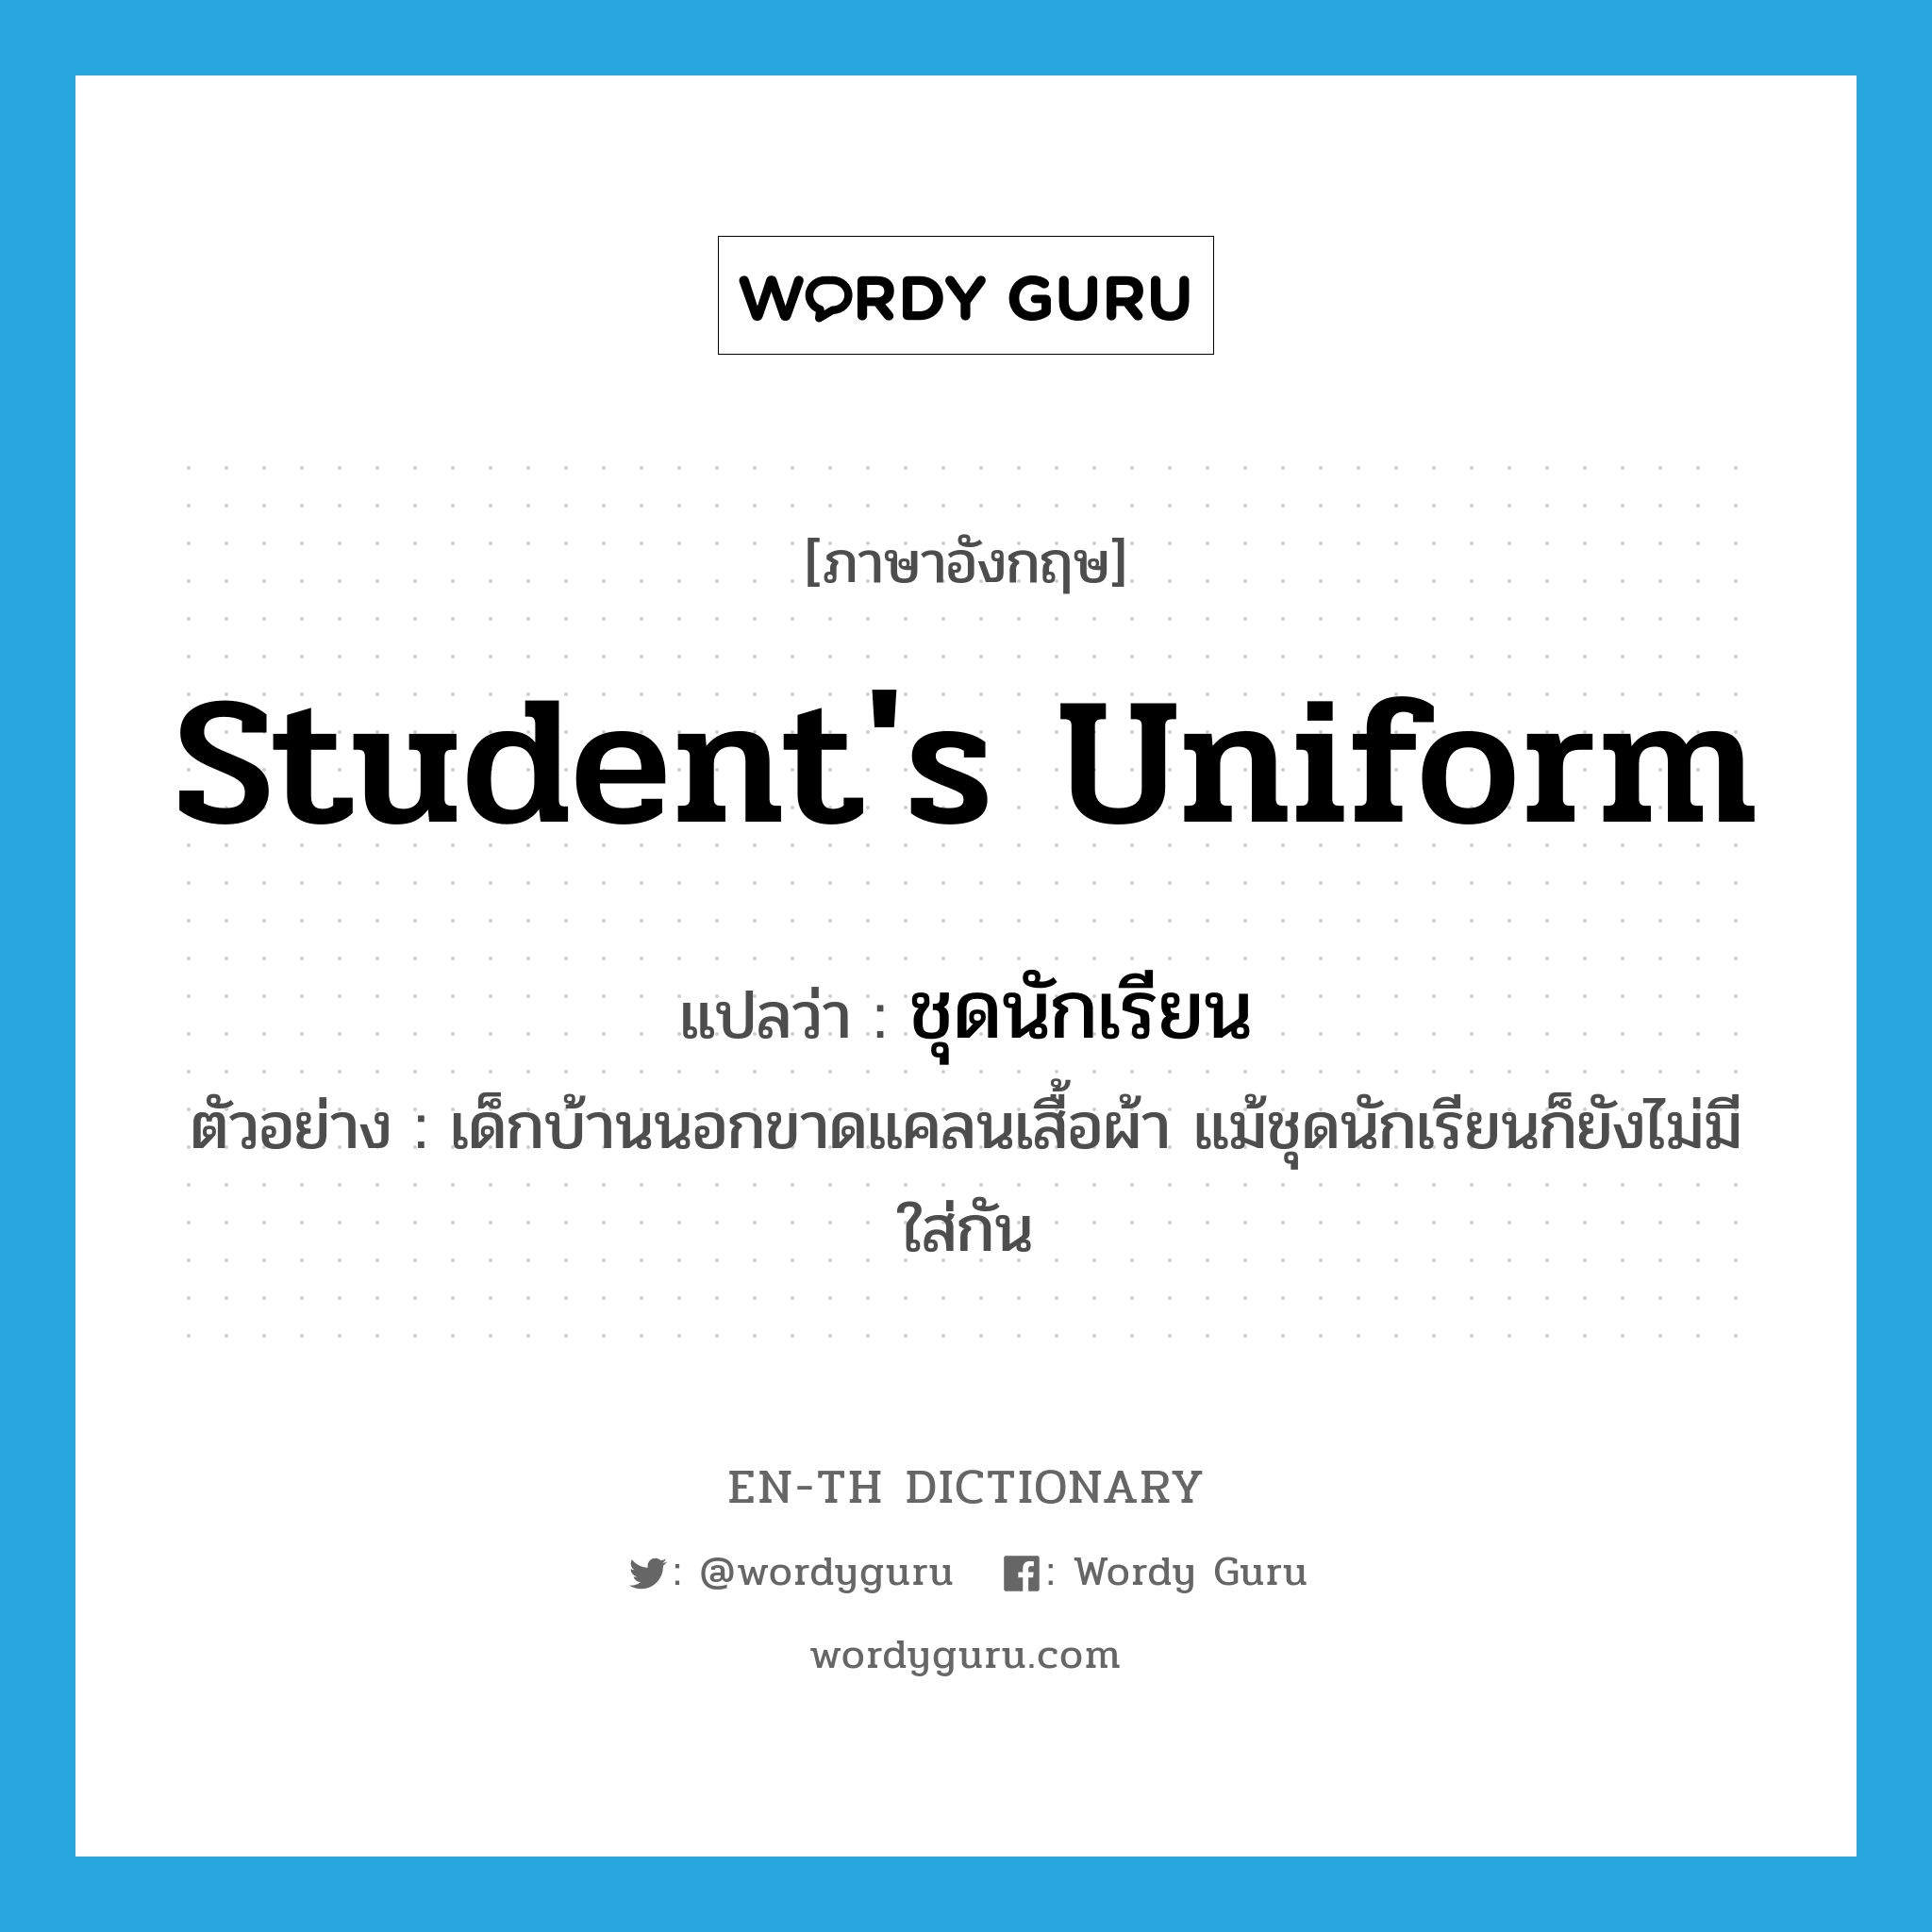 student's uniform แปลว่า?, คำศัพท์ภาษาอังกฤษ student's uniform แปลว่า ชุดนักเรียน ประเภท N ตัวอย่าง เด็กบ้านนอกขาดแคลนเสื้อผ้า แม้ชุดนักเรียนก็ยังไม่มีใส่กัน หมวด N